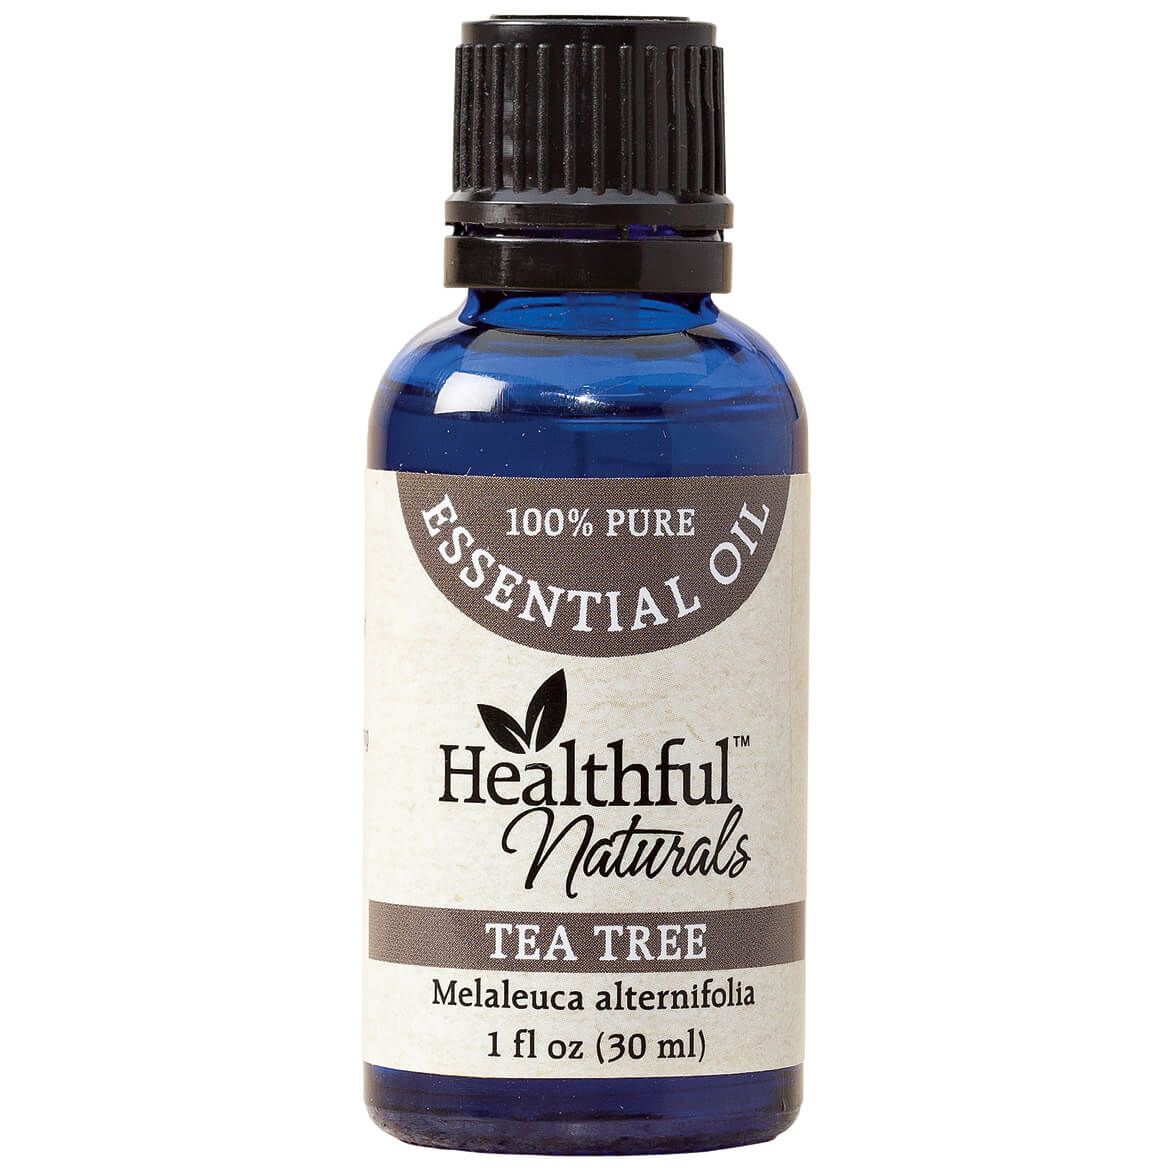 Healthful™ Naturals Tea Tree Essential Oil, 30 ml + '-' + 353457